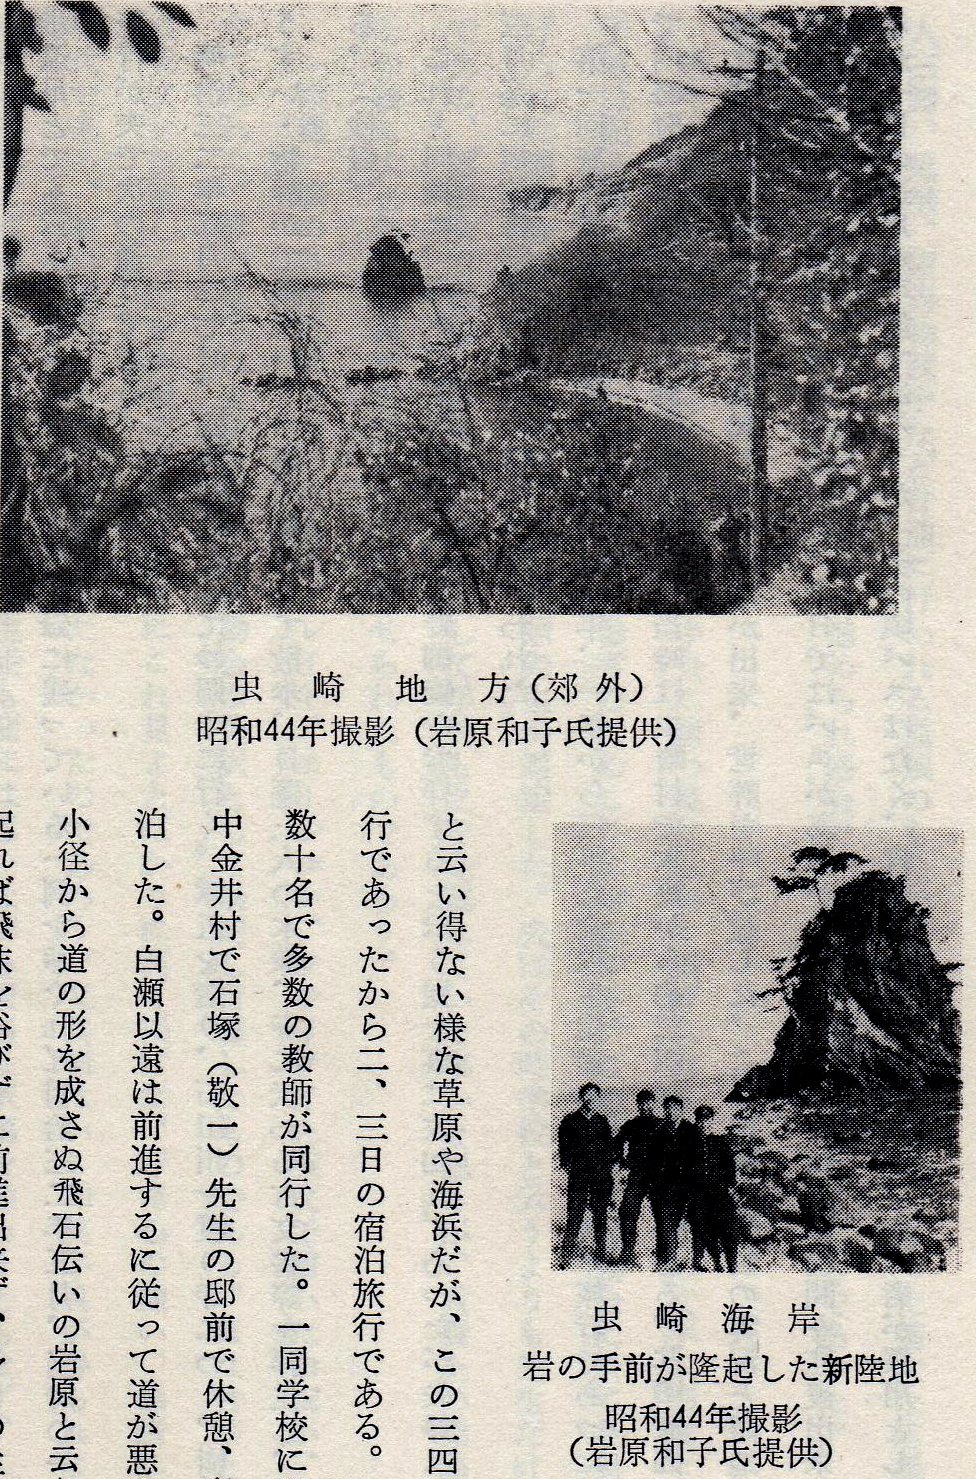 古写真 「回想の佐渡中学」 市橋輝蔵 (8)